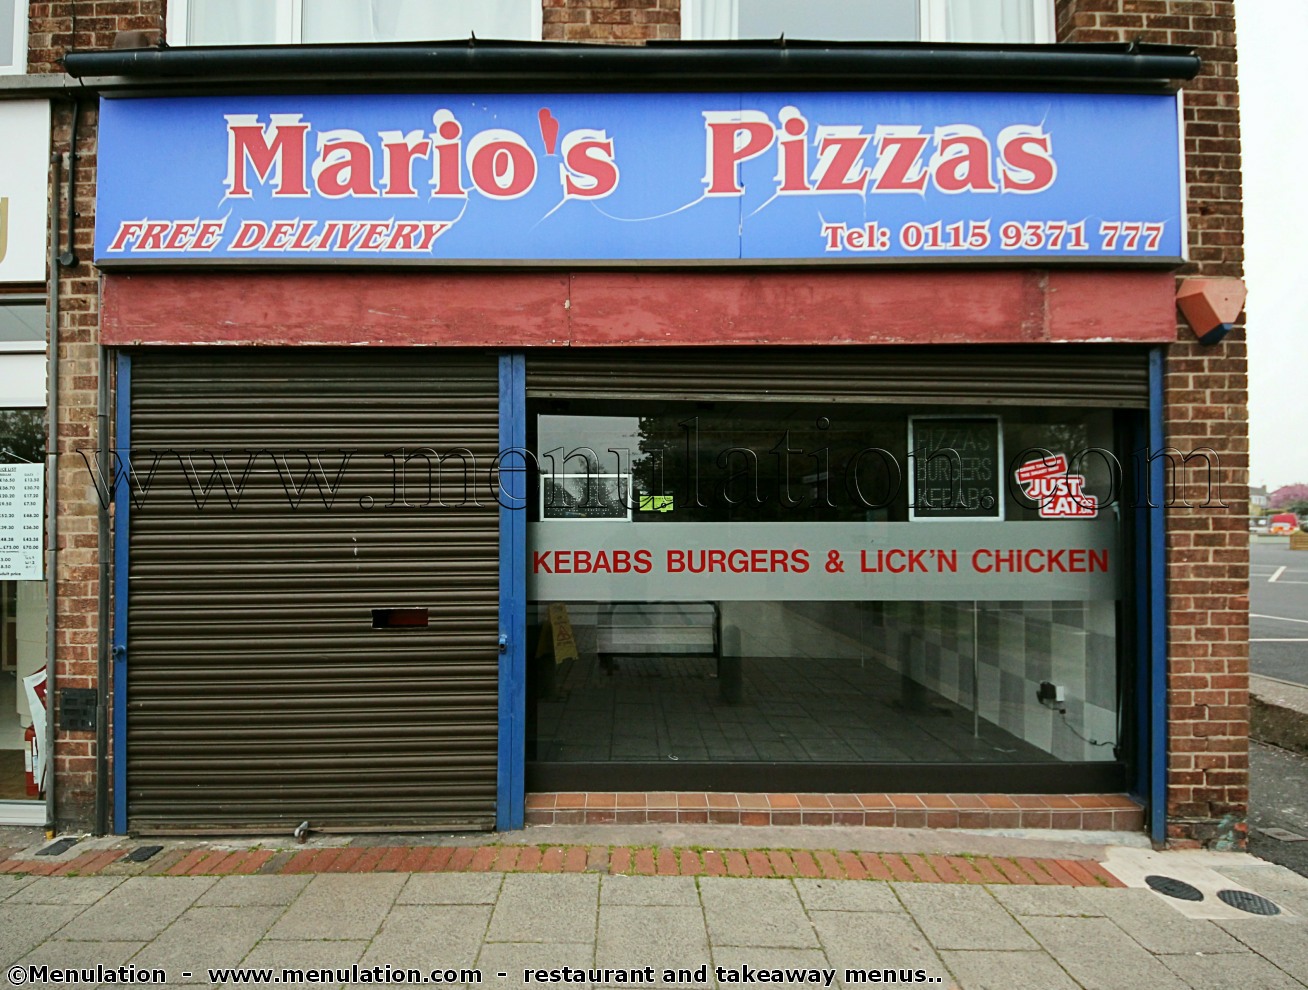 Just Mario's